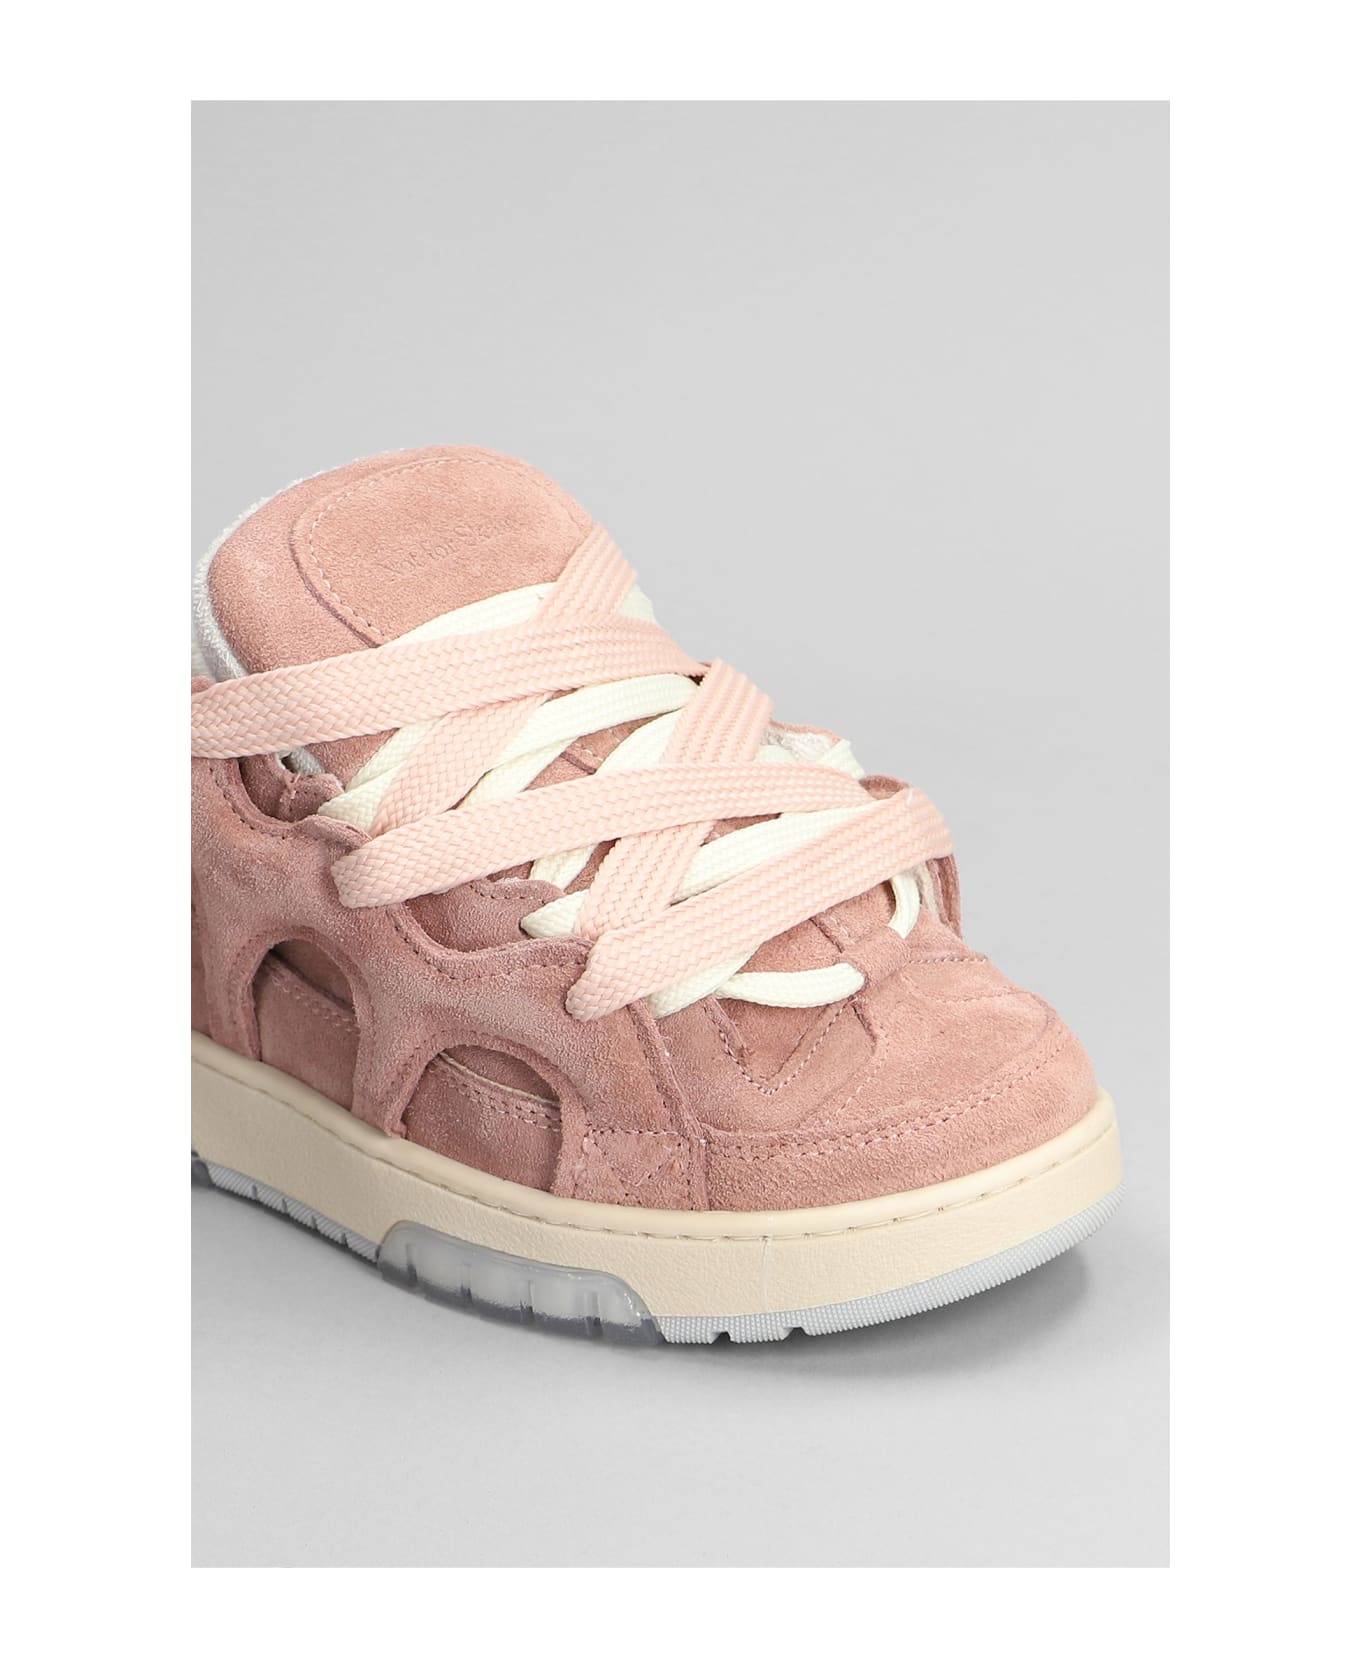 Paura Santha 1 Sneakers In Rose-pink Suede - rose-pink